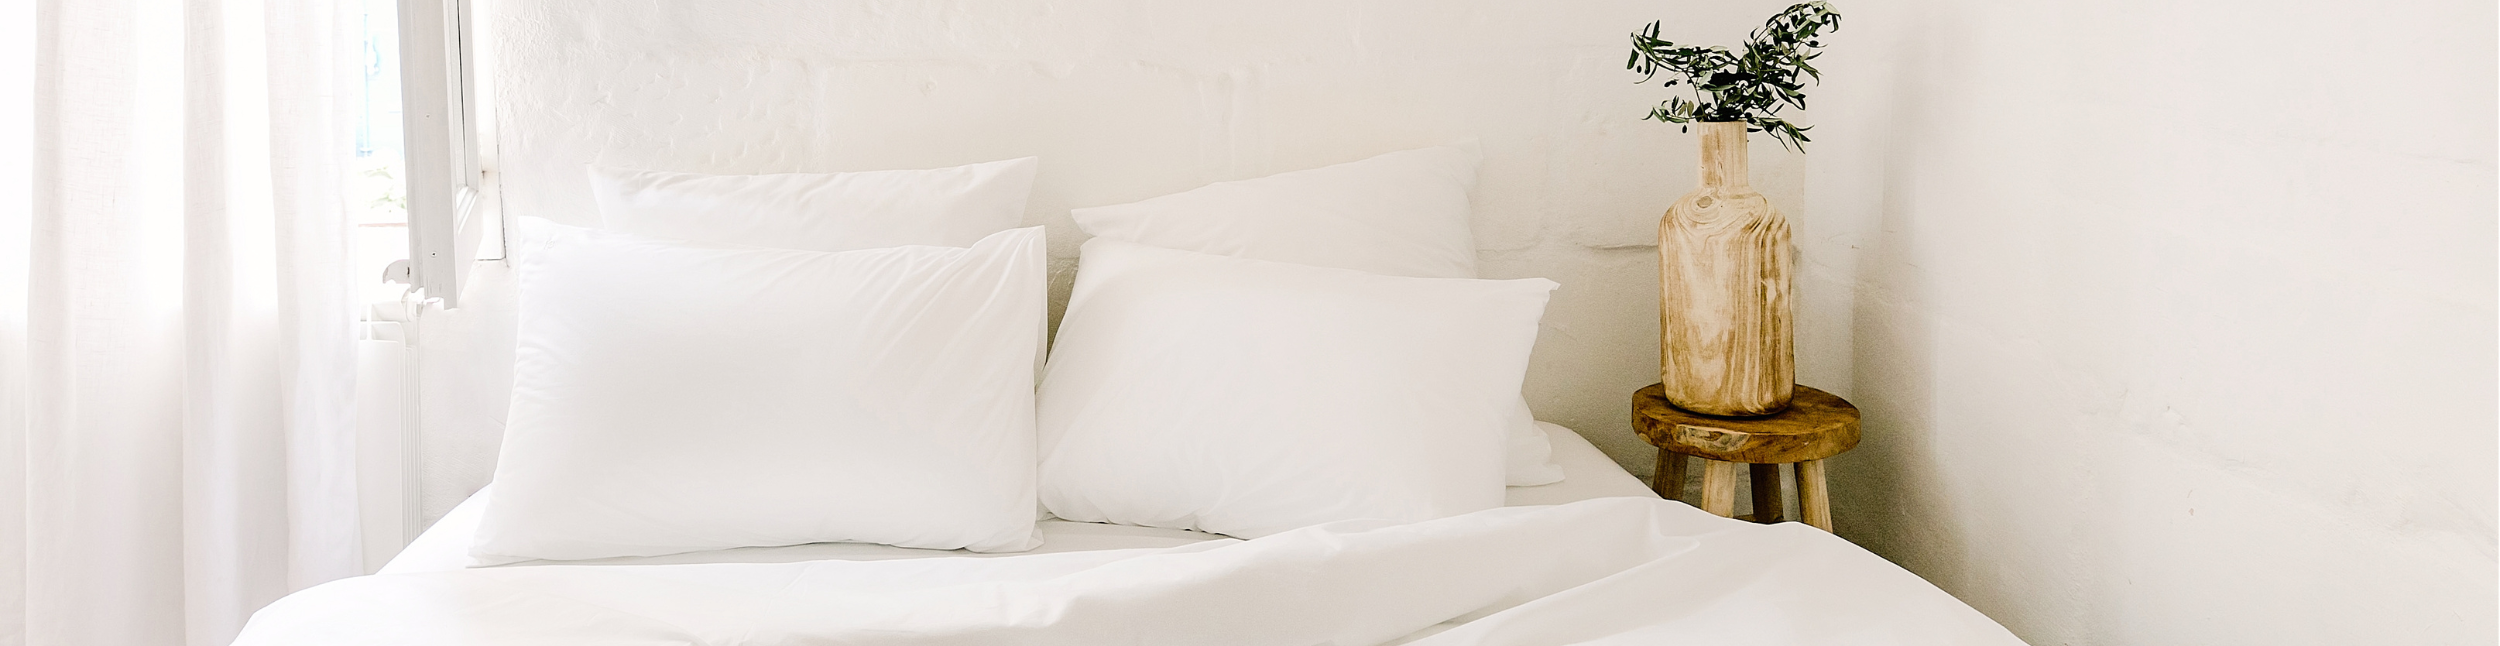 Choisir son linge de lit pour bien dormir – Bonnuit